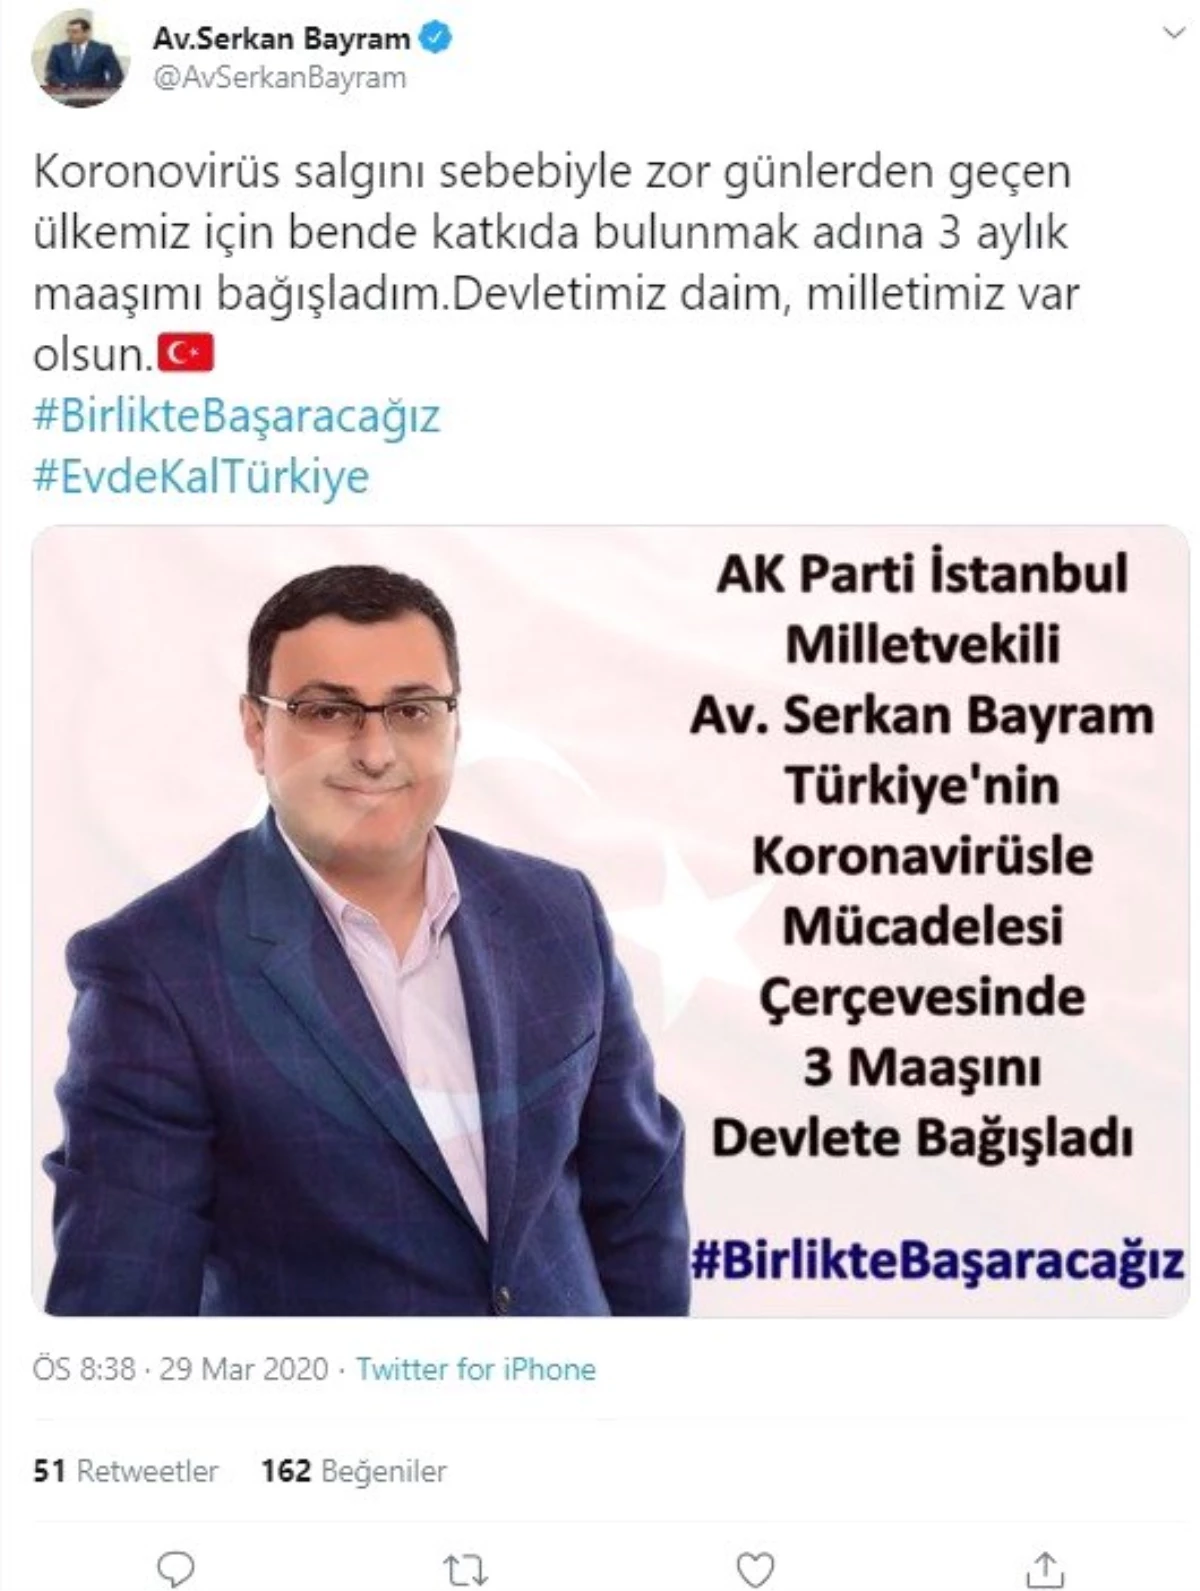 AK Parti İstanbul Milletvekili\'nden korona virüsle mücadeleye anlamlı destek